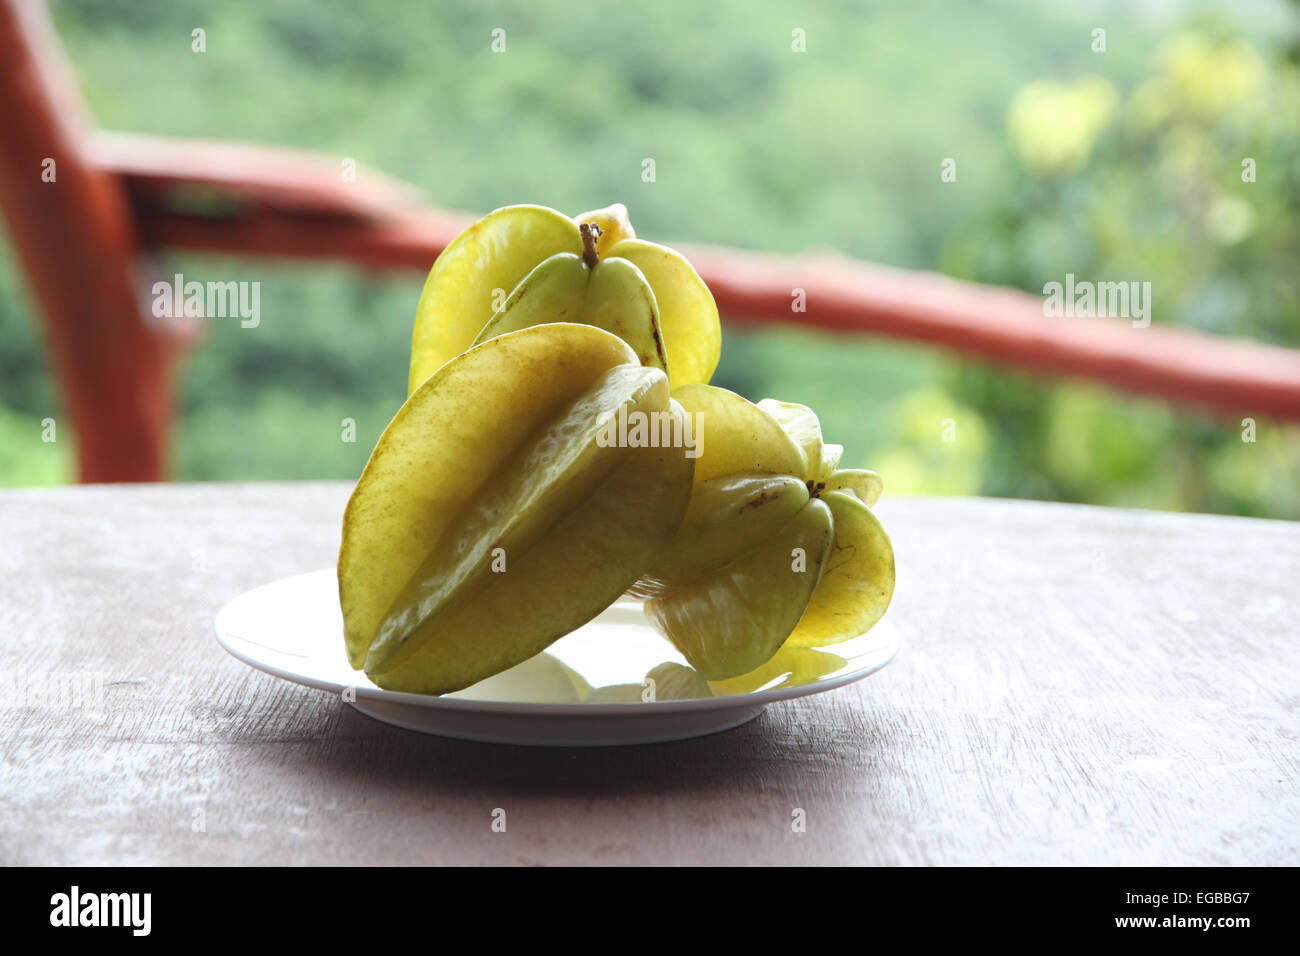 Star-Obst in Schale auf der Lebensmittel-Tabelle. Stockfoto